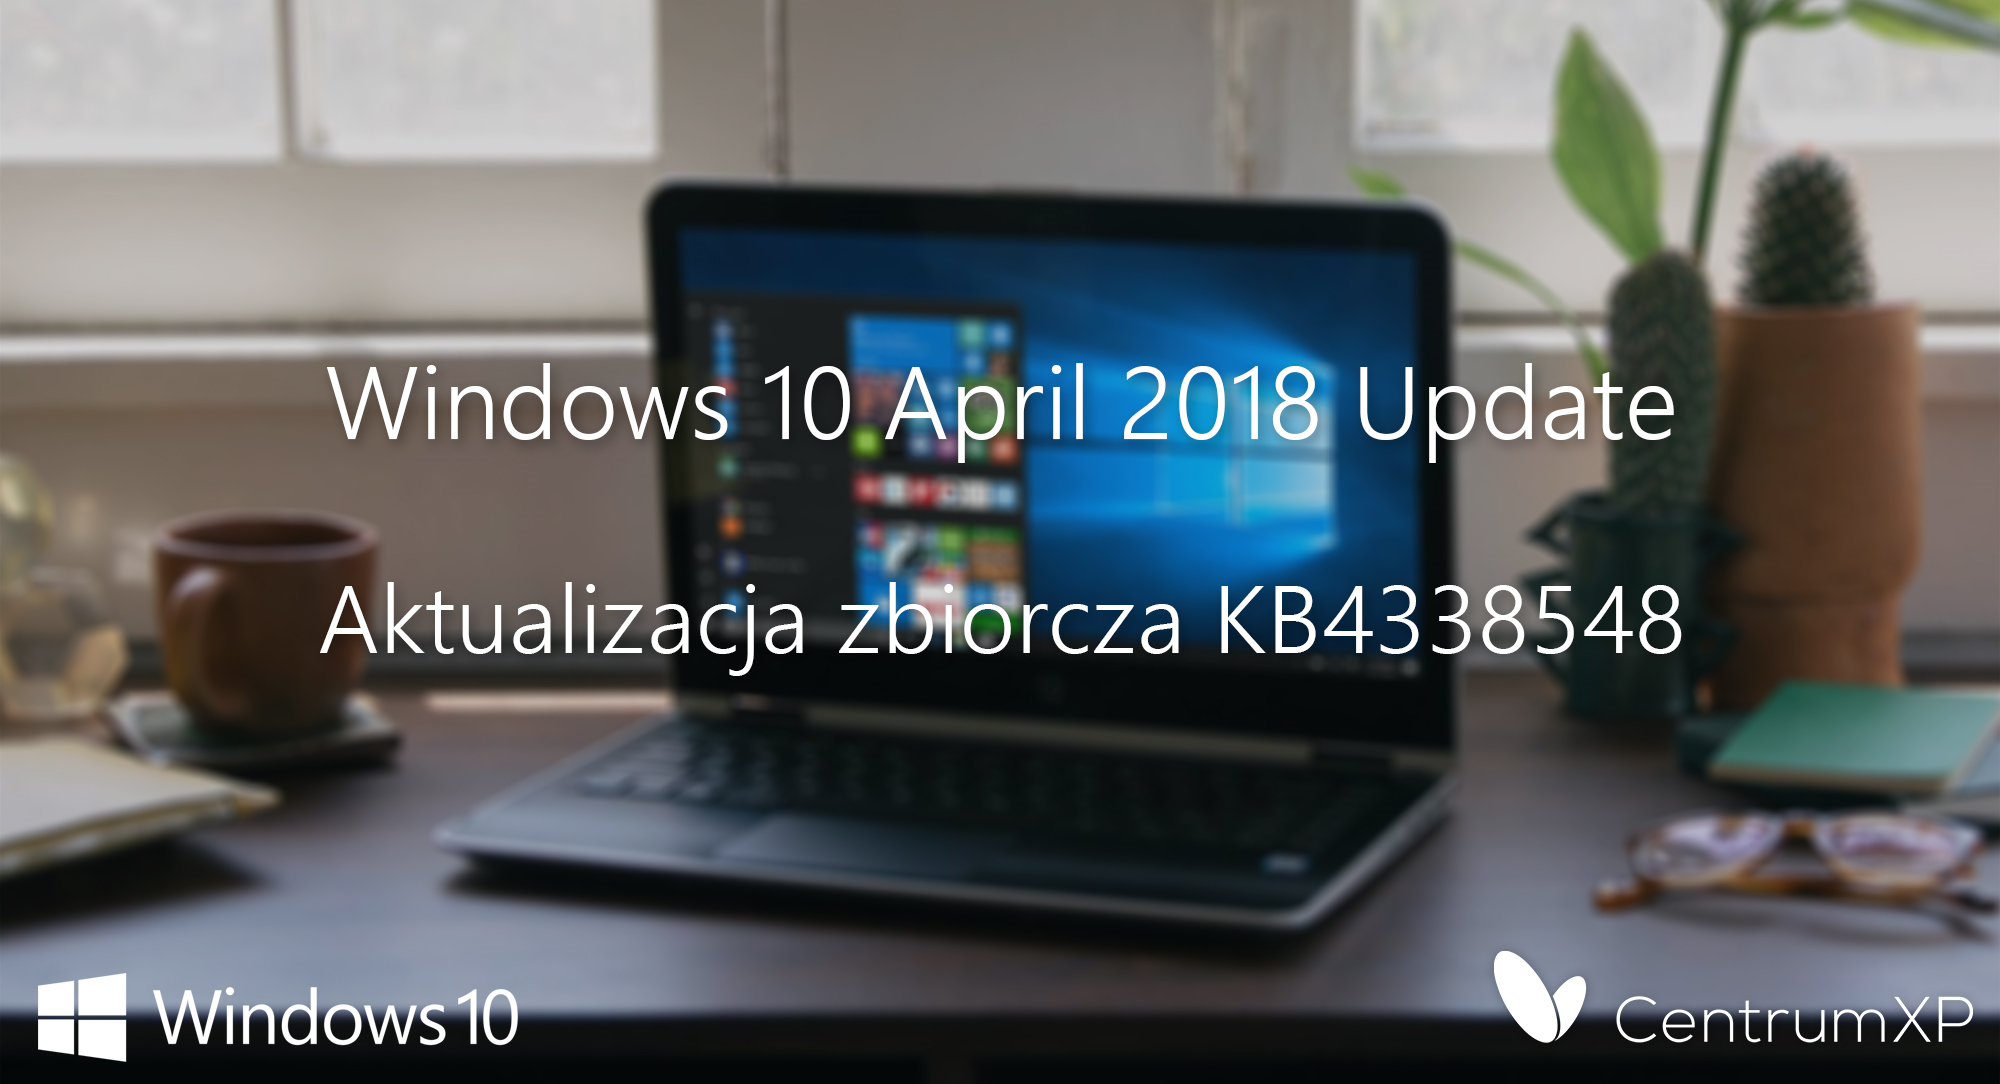 April 2018 Update - nowa, drobna aktualizacja zbiorcza KB4338548